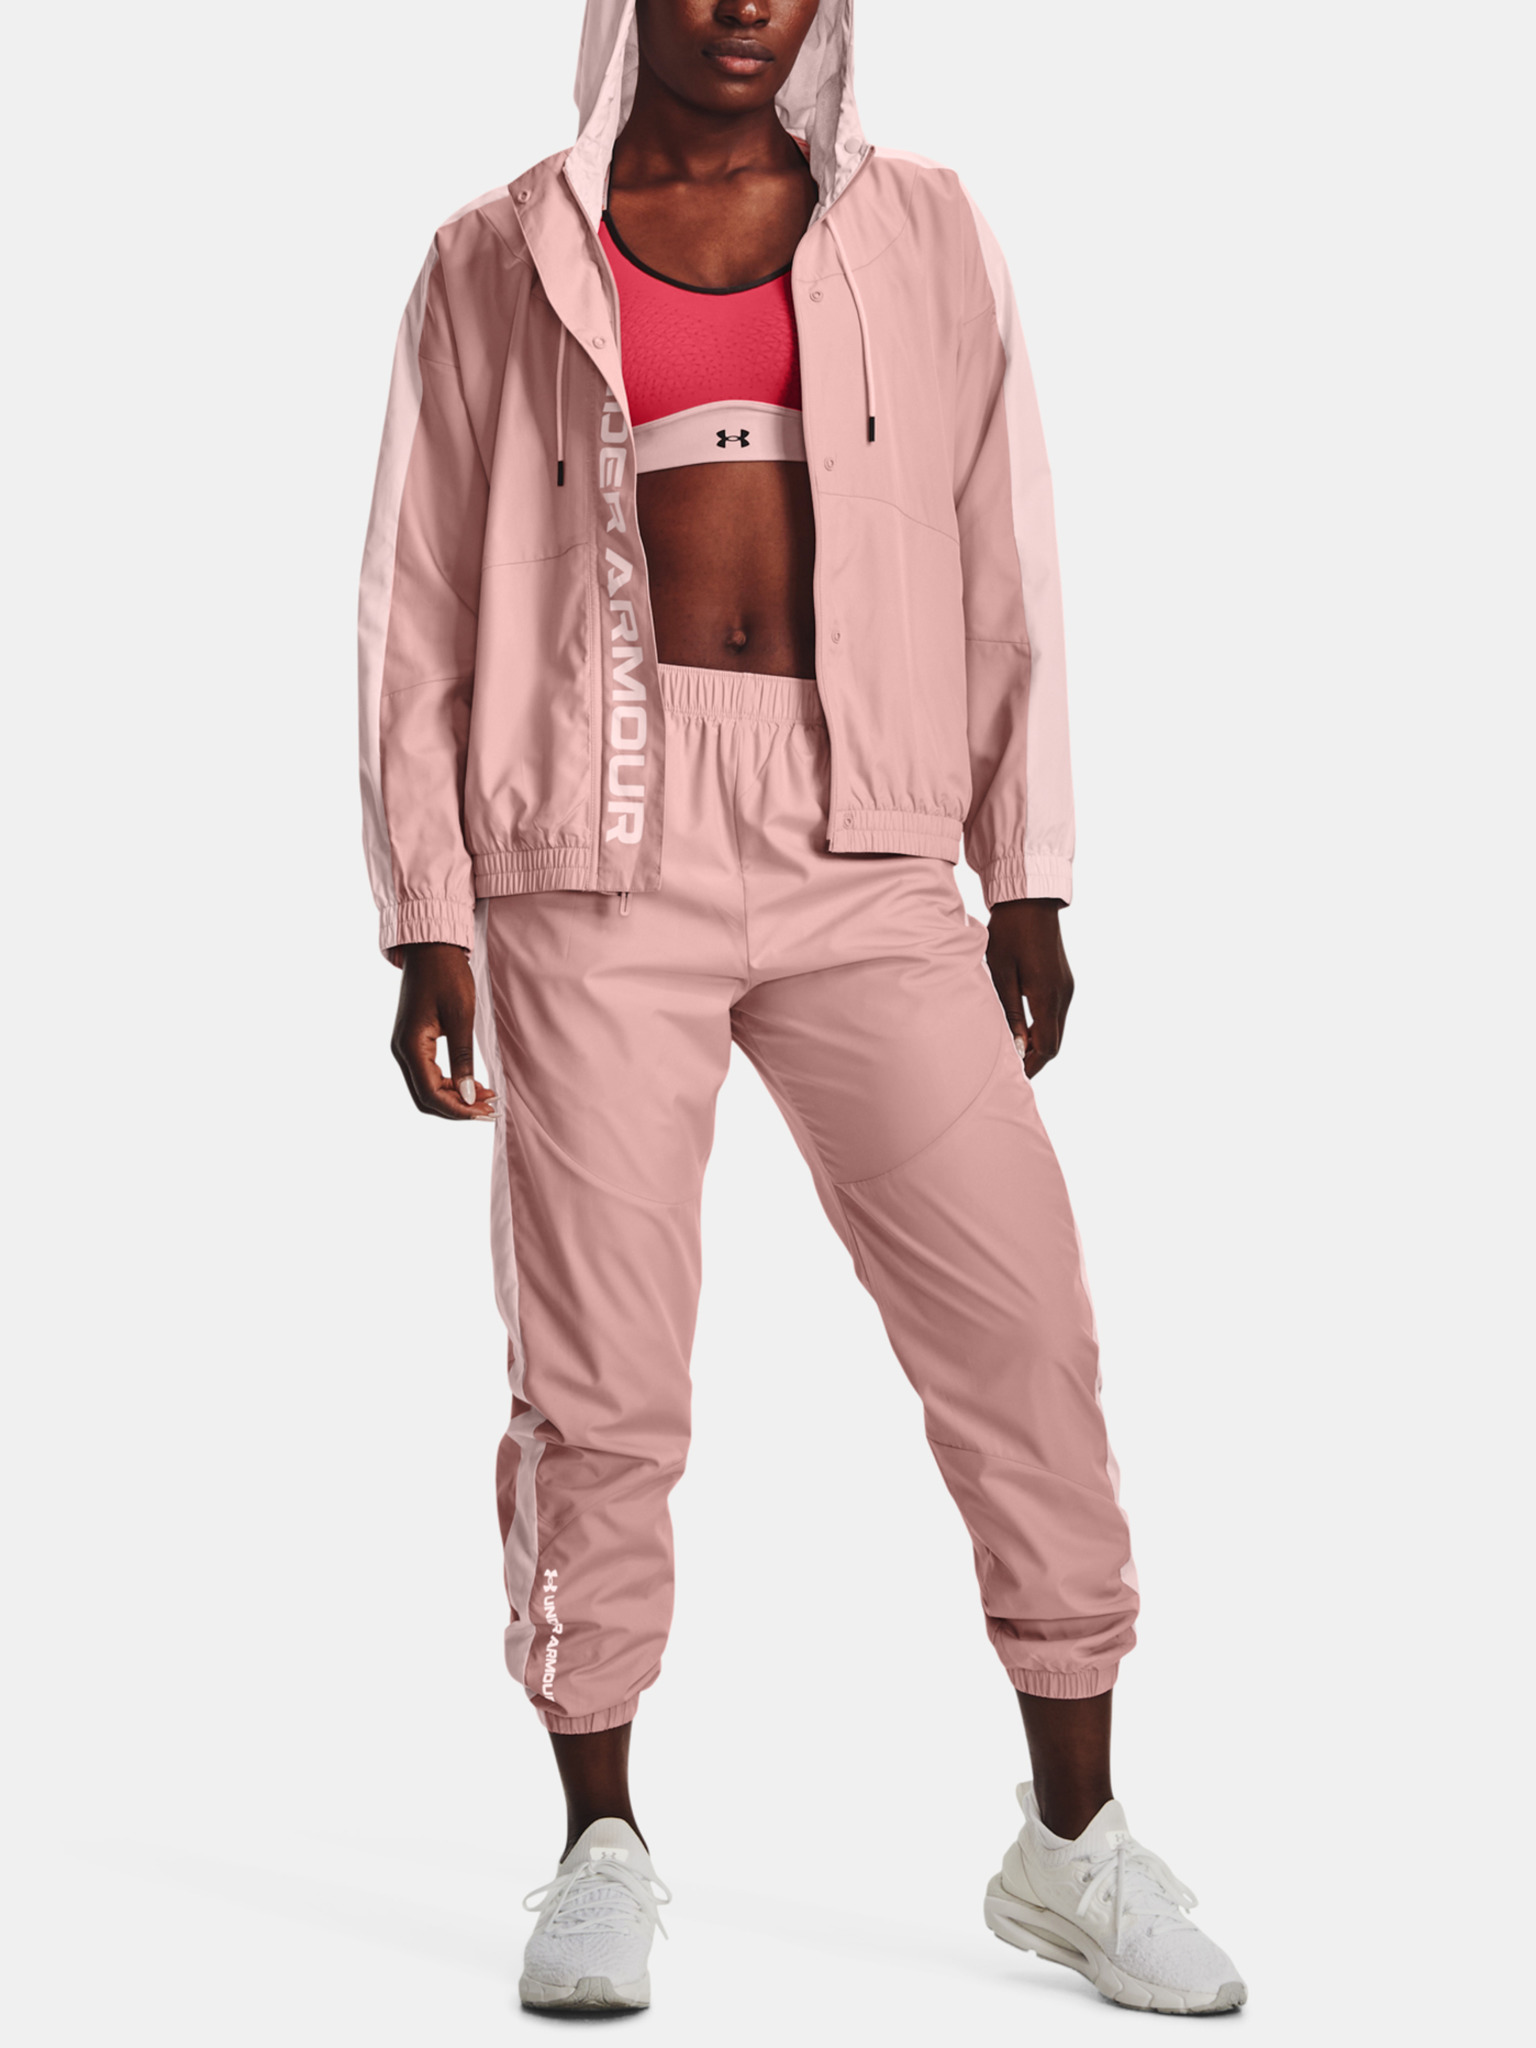 UNDER ARMOUR Under Armour UA RUSH WOVEN - Veste Femme retro pink - Private  Sport Shop